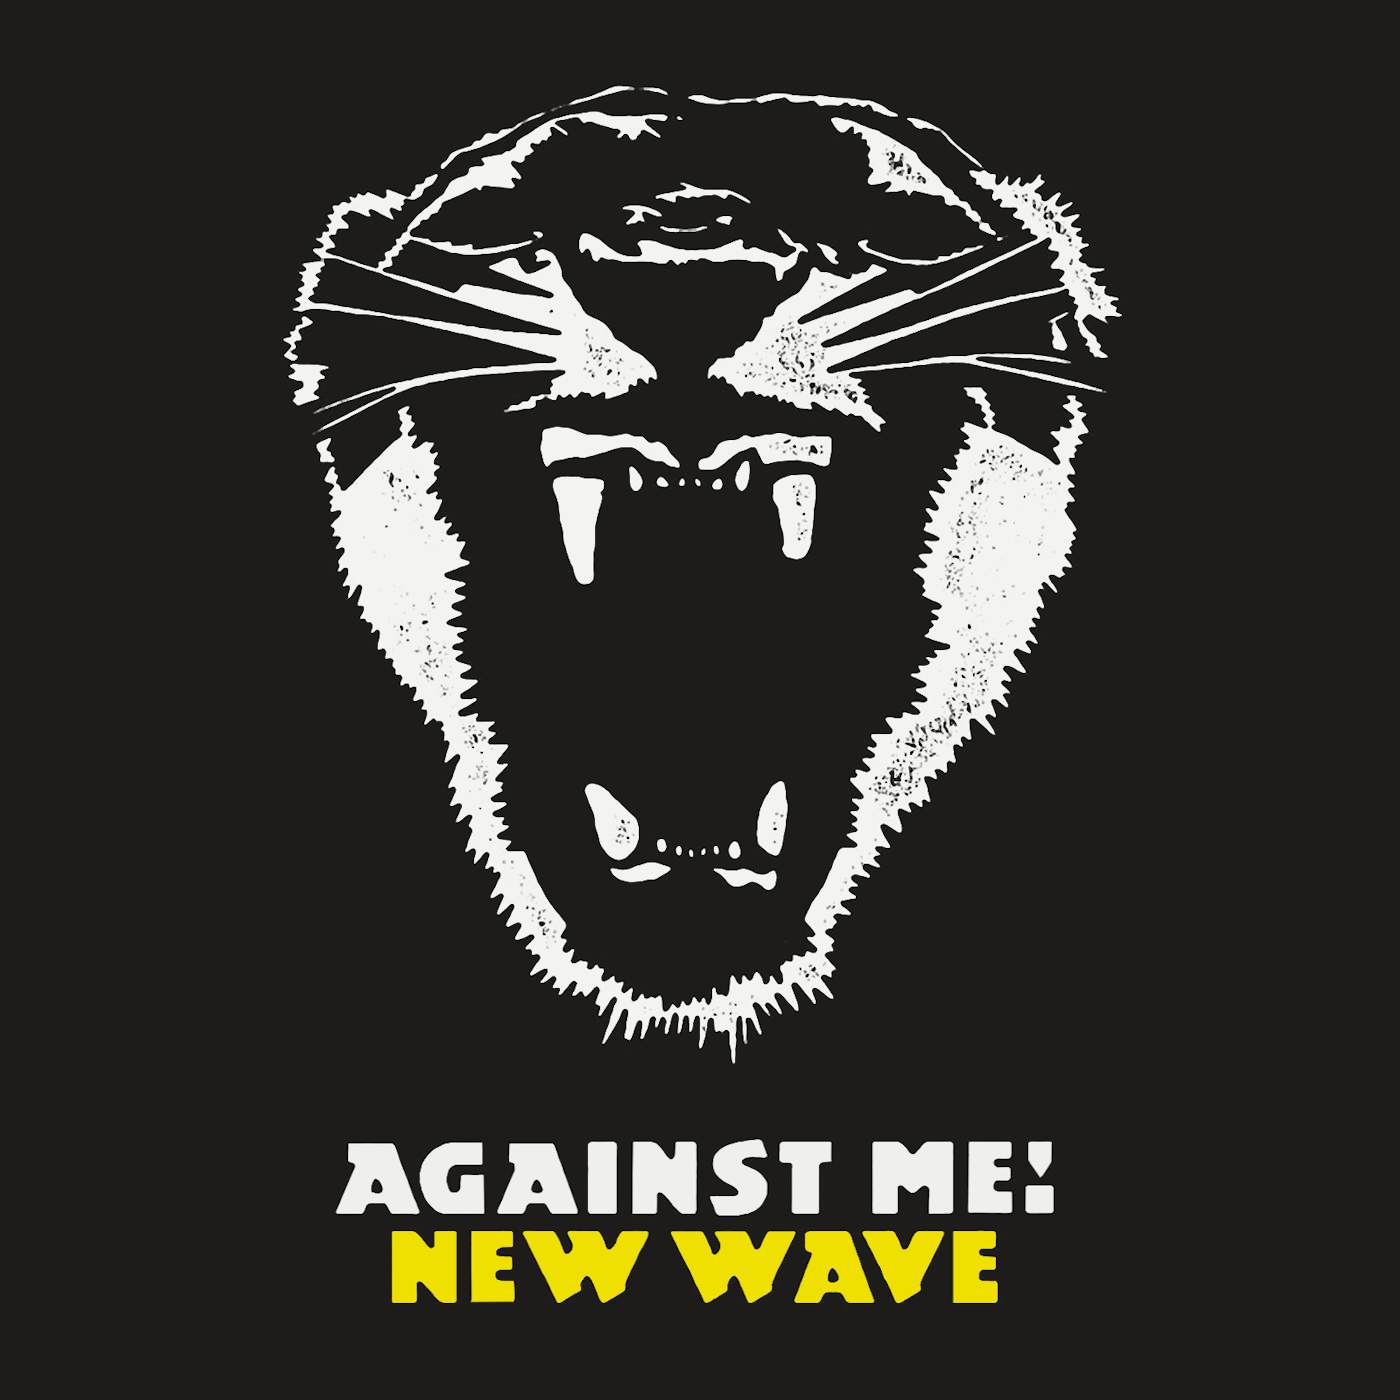 Against Me! T-Shirt | New Wave Album Art Against Me! Shirt